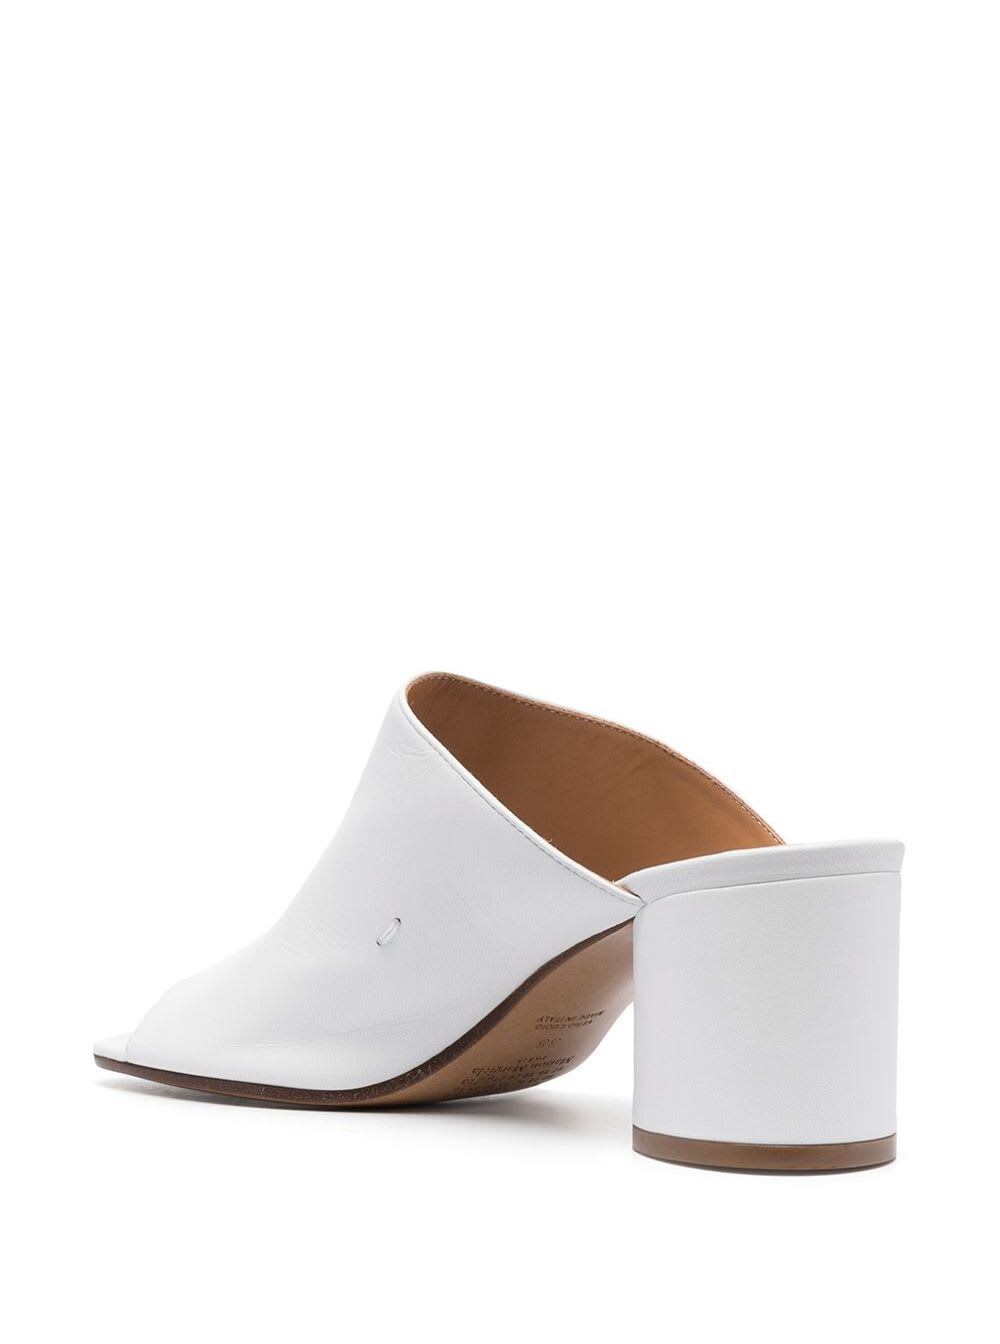 Maison Margiela Hannah Slide Sandal In White | ModeSens